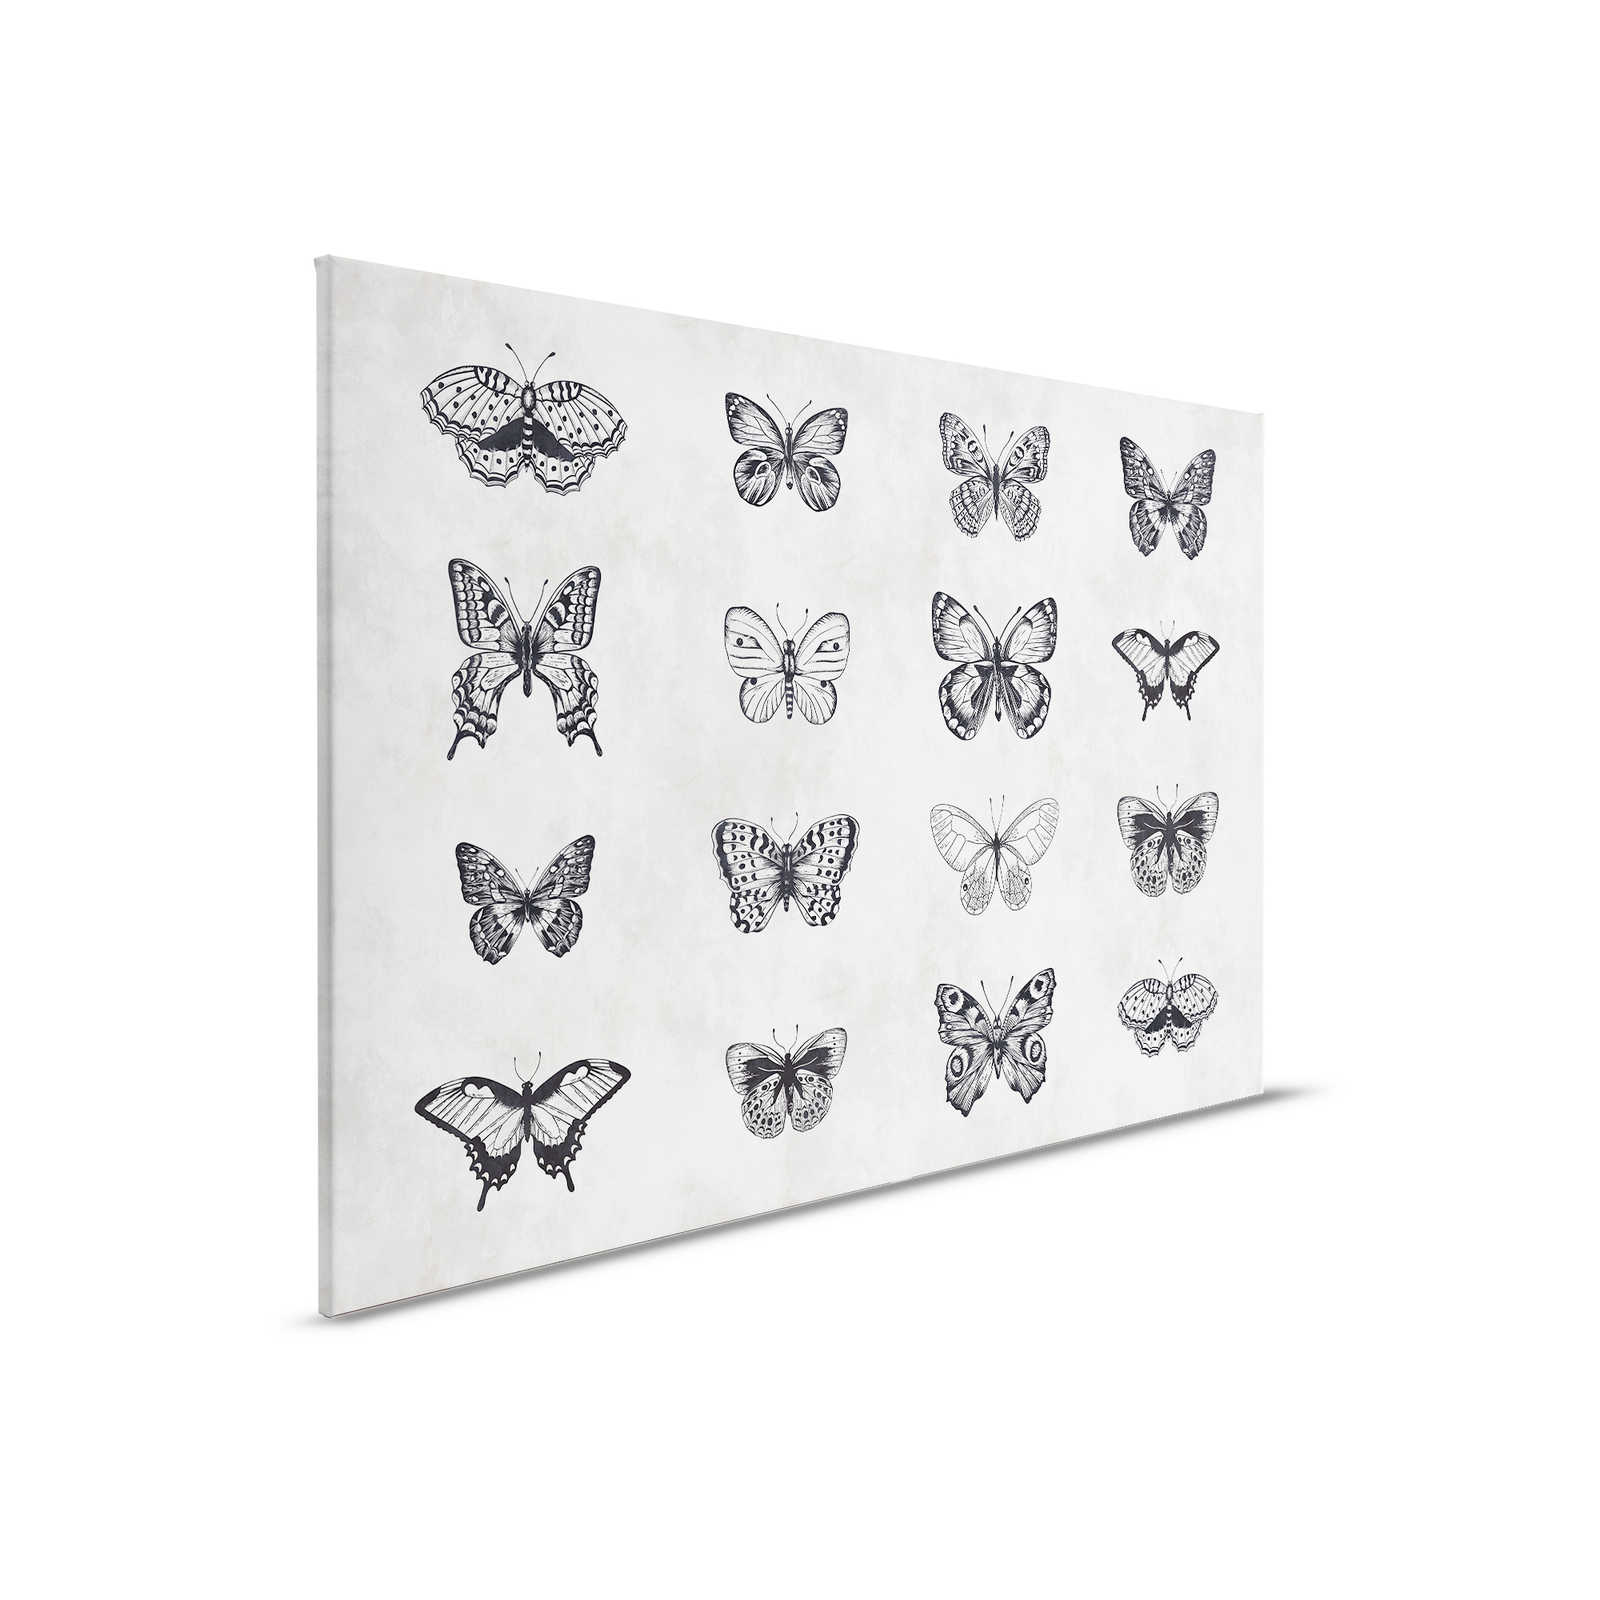         Schmetterling Leinwandbild Schwarz-Weiß Zeichnungen – 0,90 m x 0,60 m
    